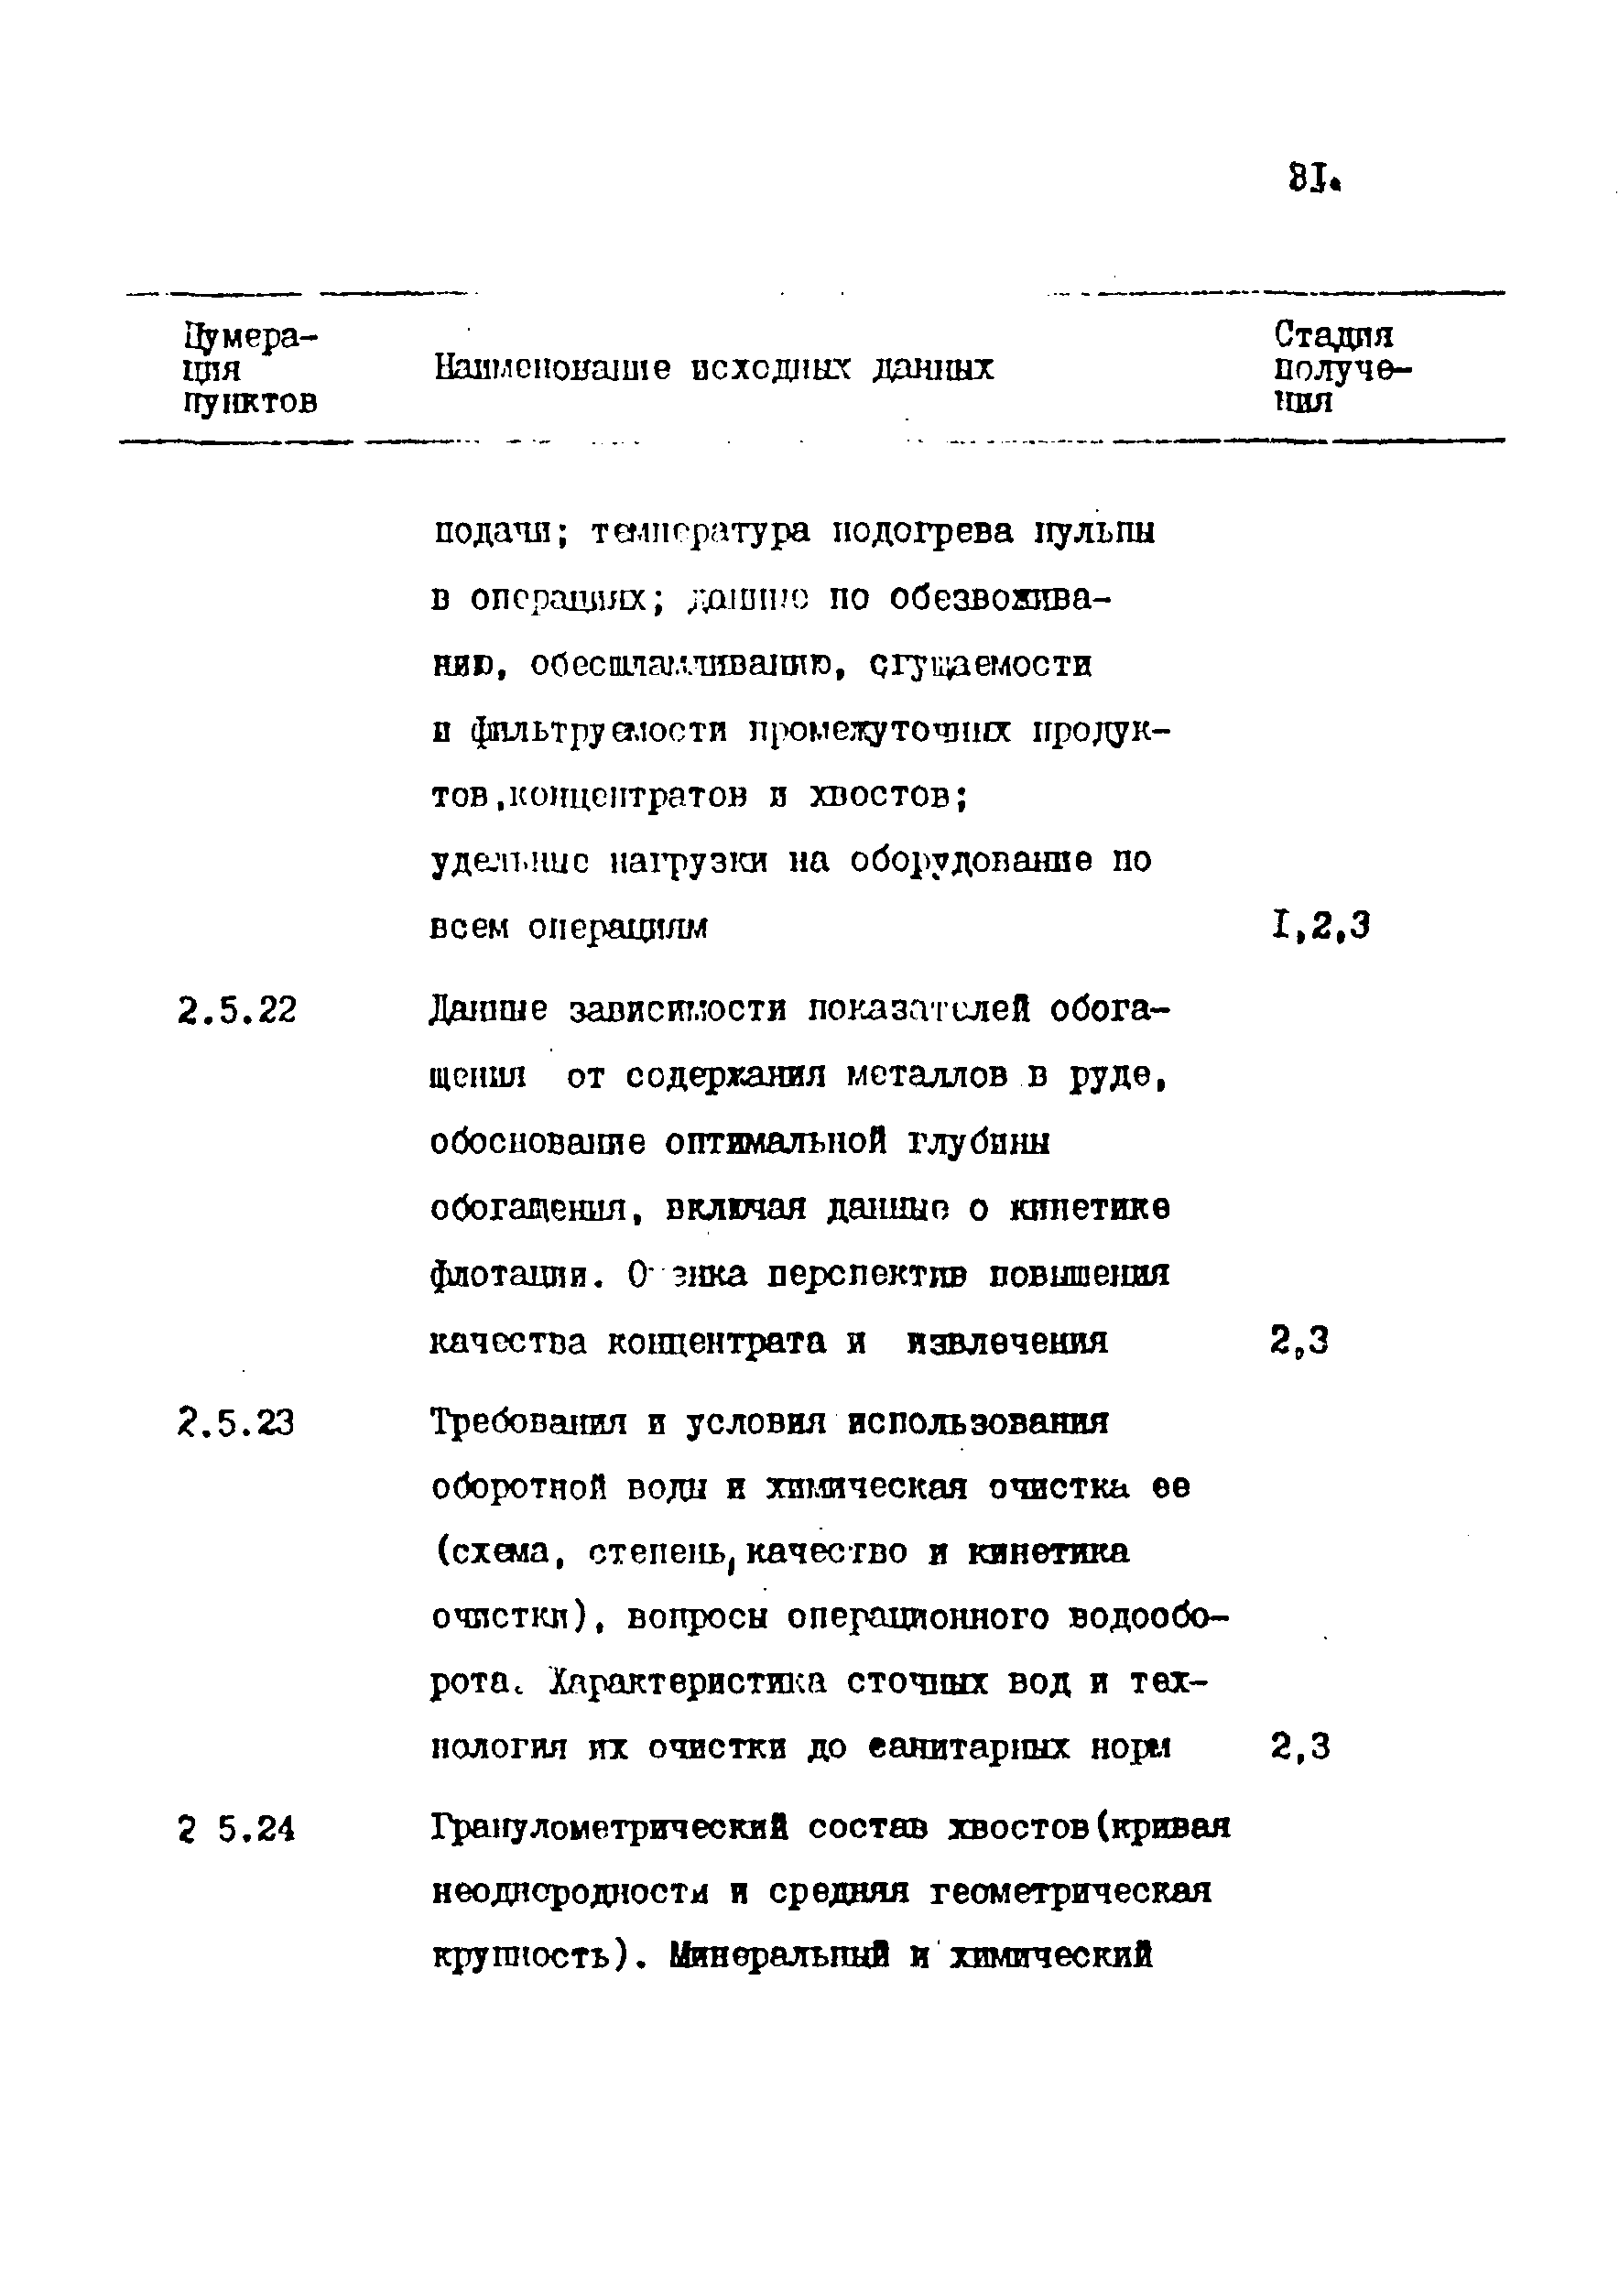 ВСН 17-86